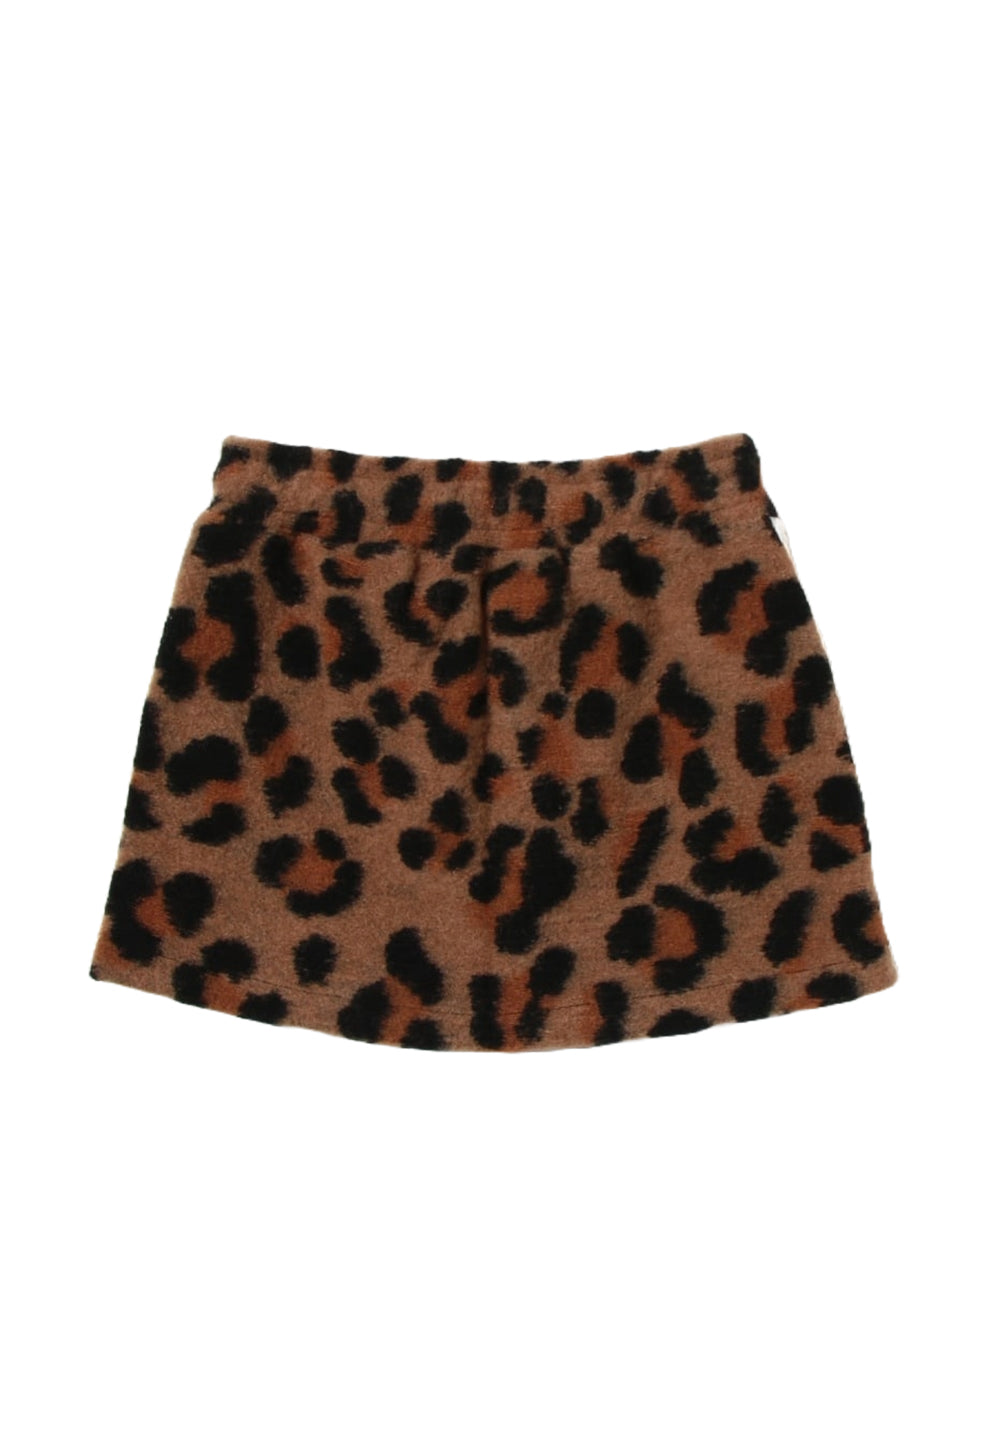 Leopard skirt for girls